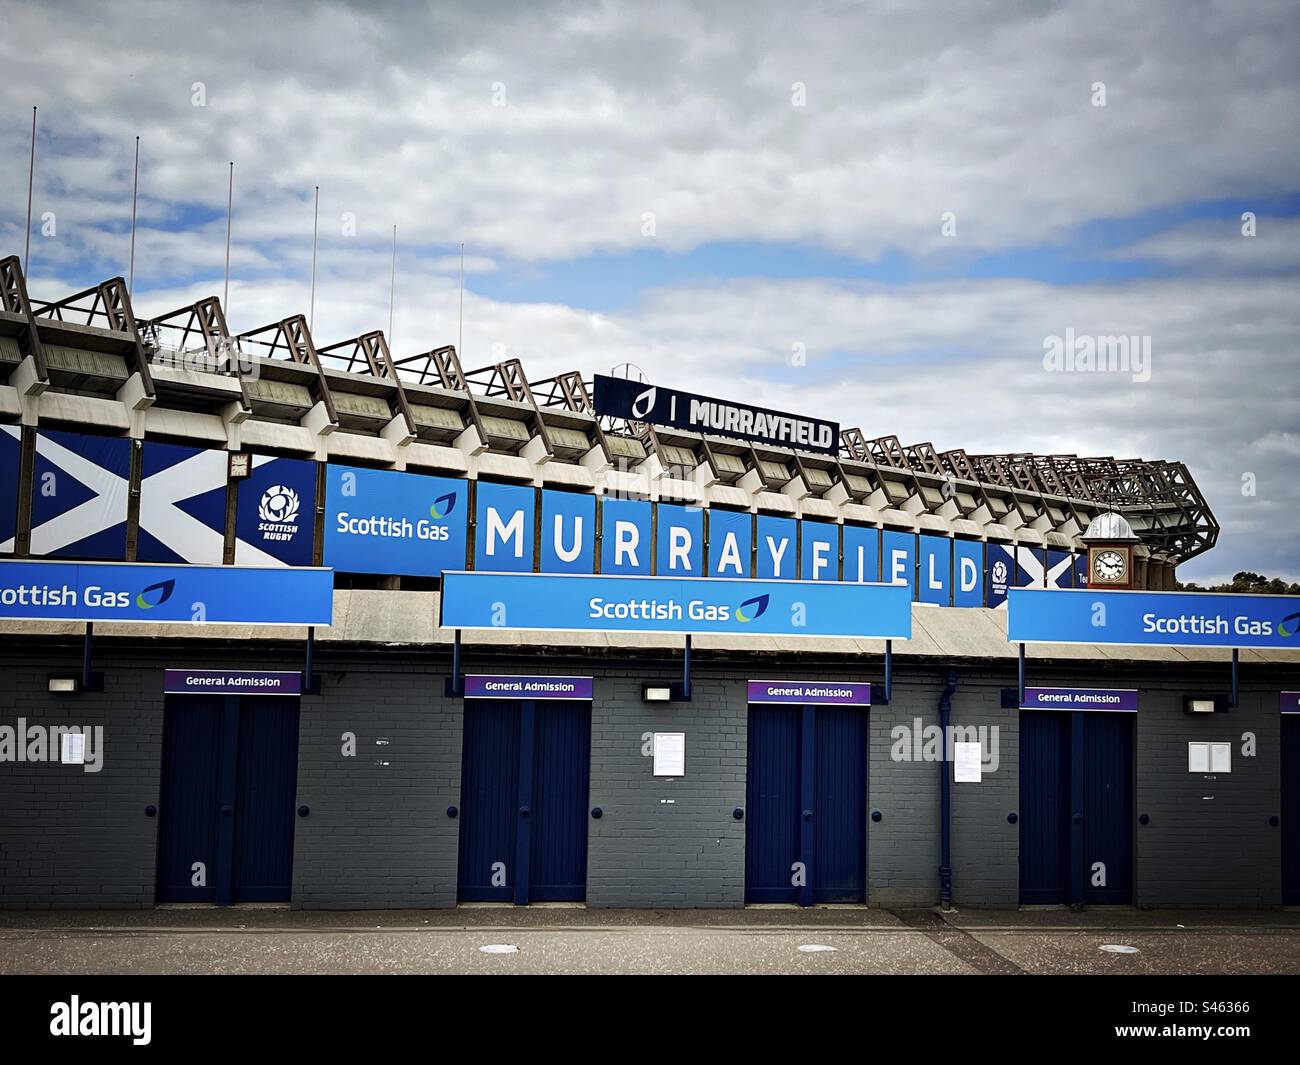 Drehkreuze vor dem Murrayfield-Stadion in Edinburgh, Schottland. Murrayfield ist die Heimat des schottischen Rugbyteams. Stockfoto